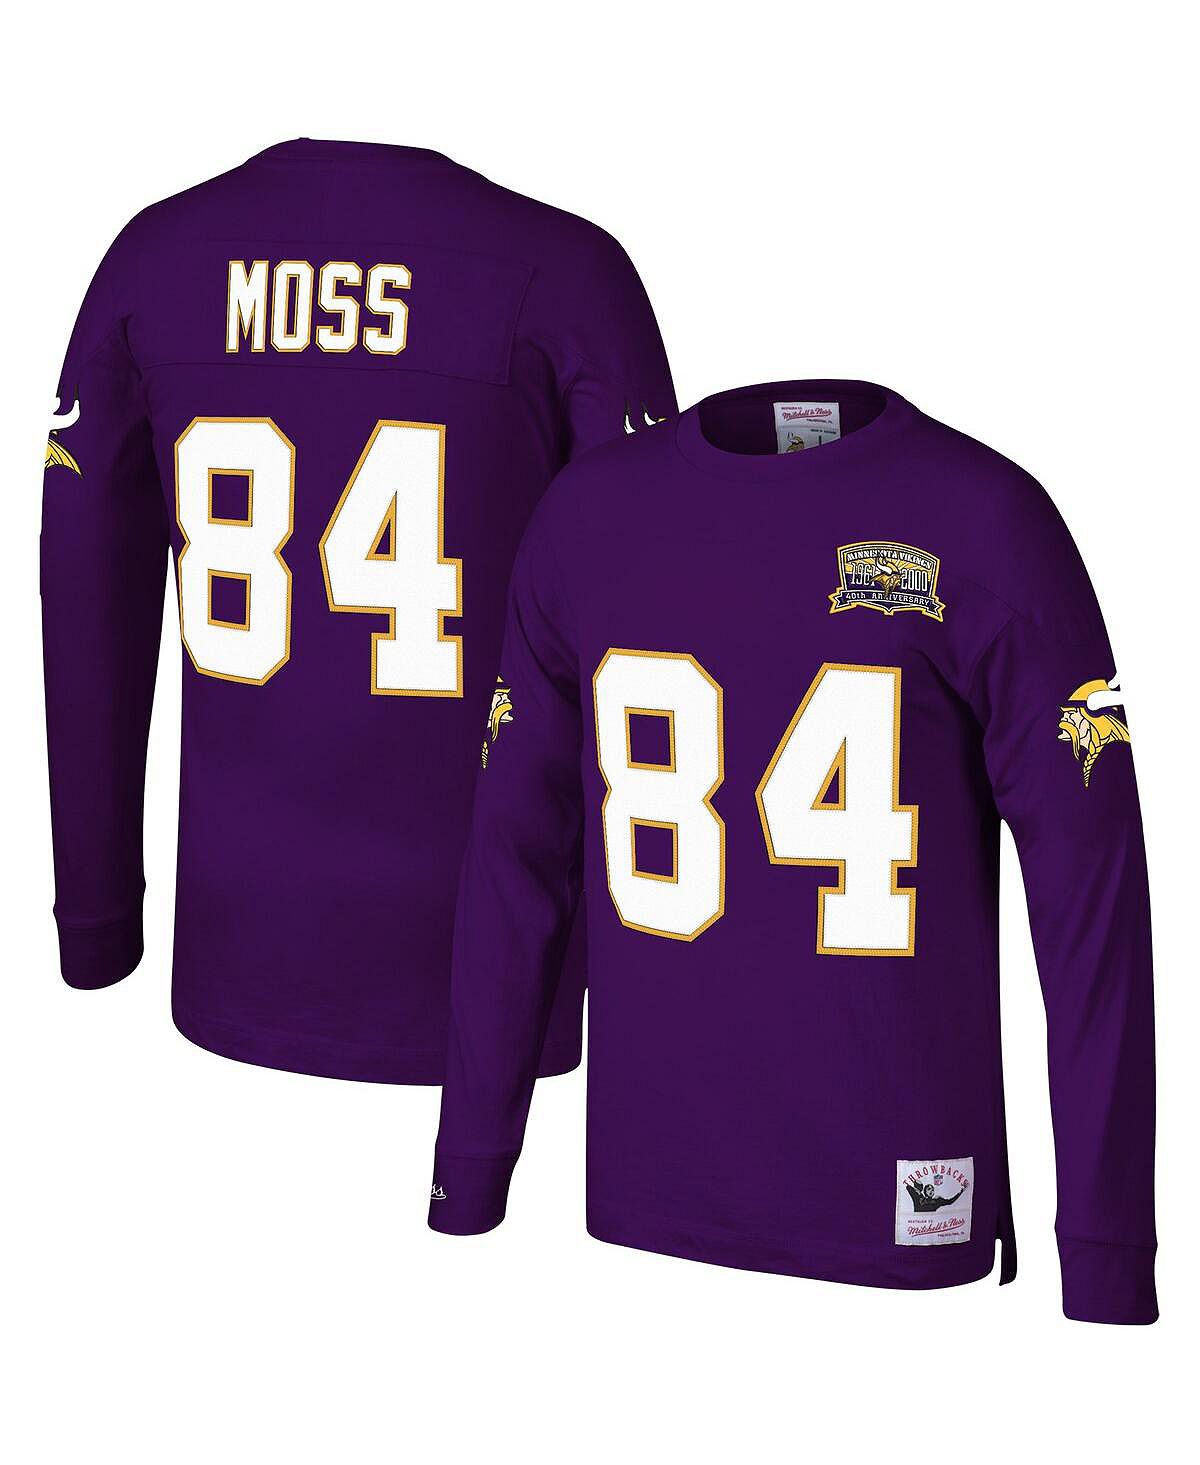 Мужская фиолетовая футболка Randy Moss Minnesota Vikings 2000 с именем и номером игрока, вышедшего на пенсию, с длинным рукавом Mitchell & Ness